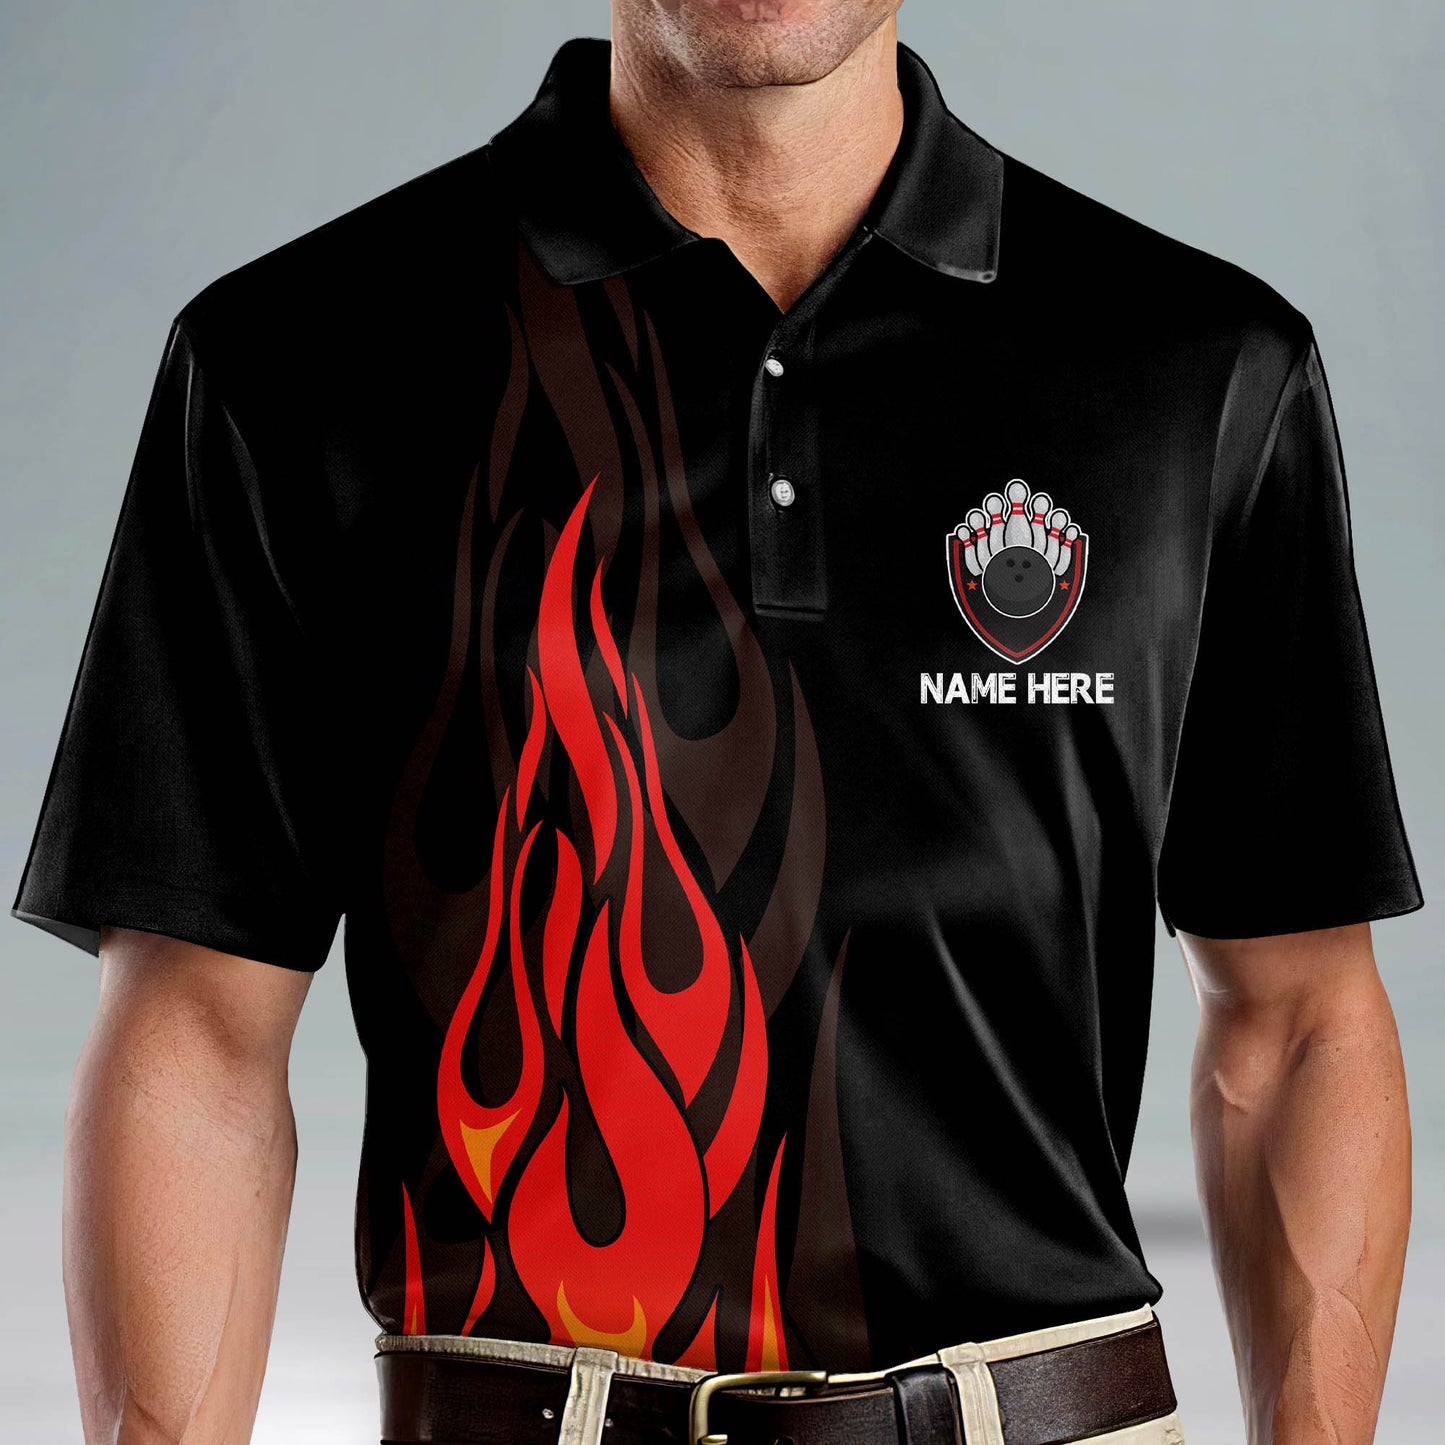 Custom Bowling Shirts For Men - Men's Customize Funny Bowling Shirt - Flame Bowling Team Shirts - American Short Sleeve Bowling Shirts For Men BM0066